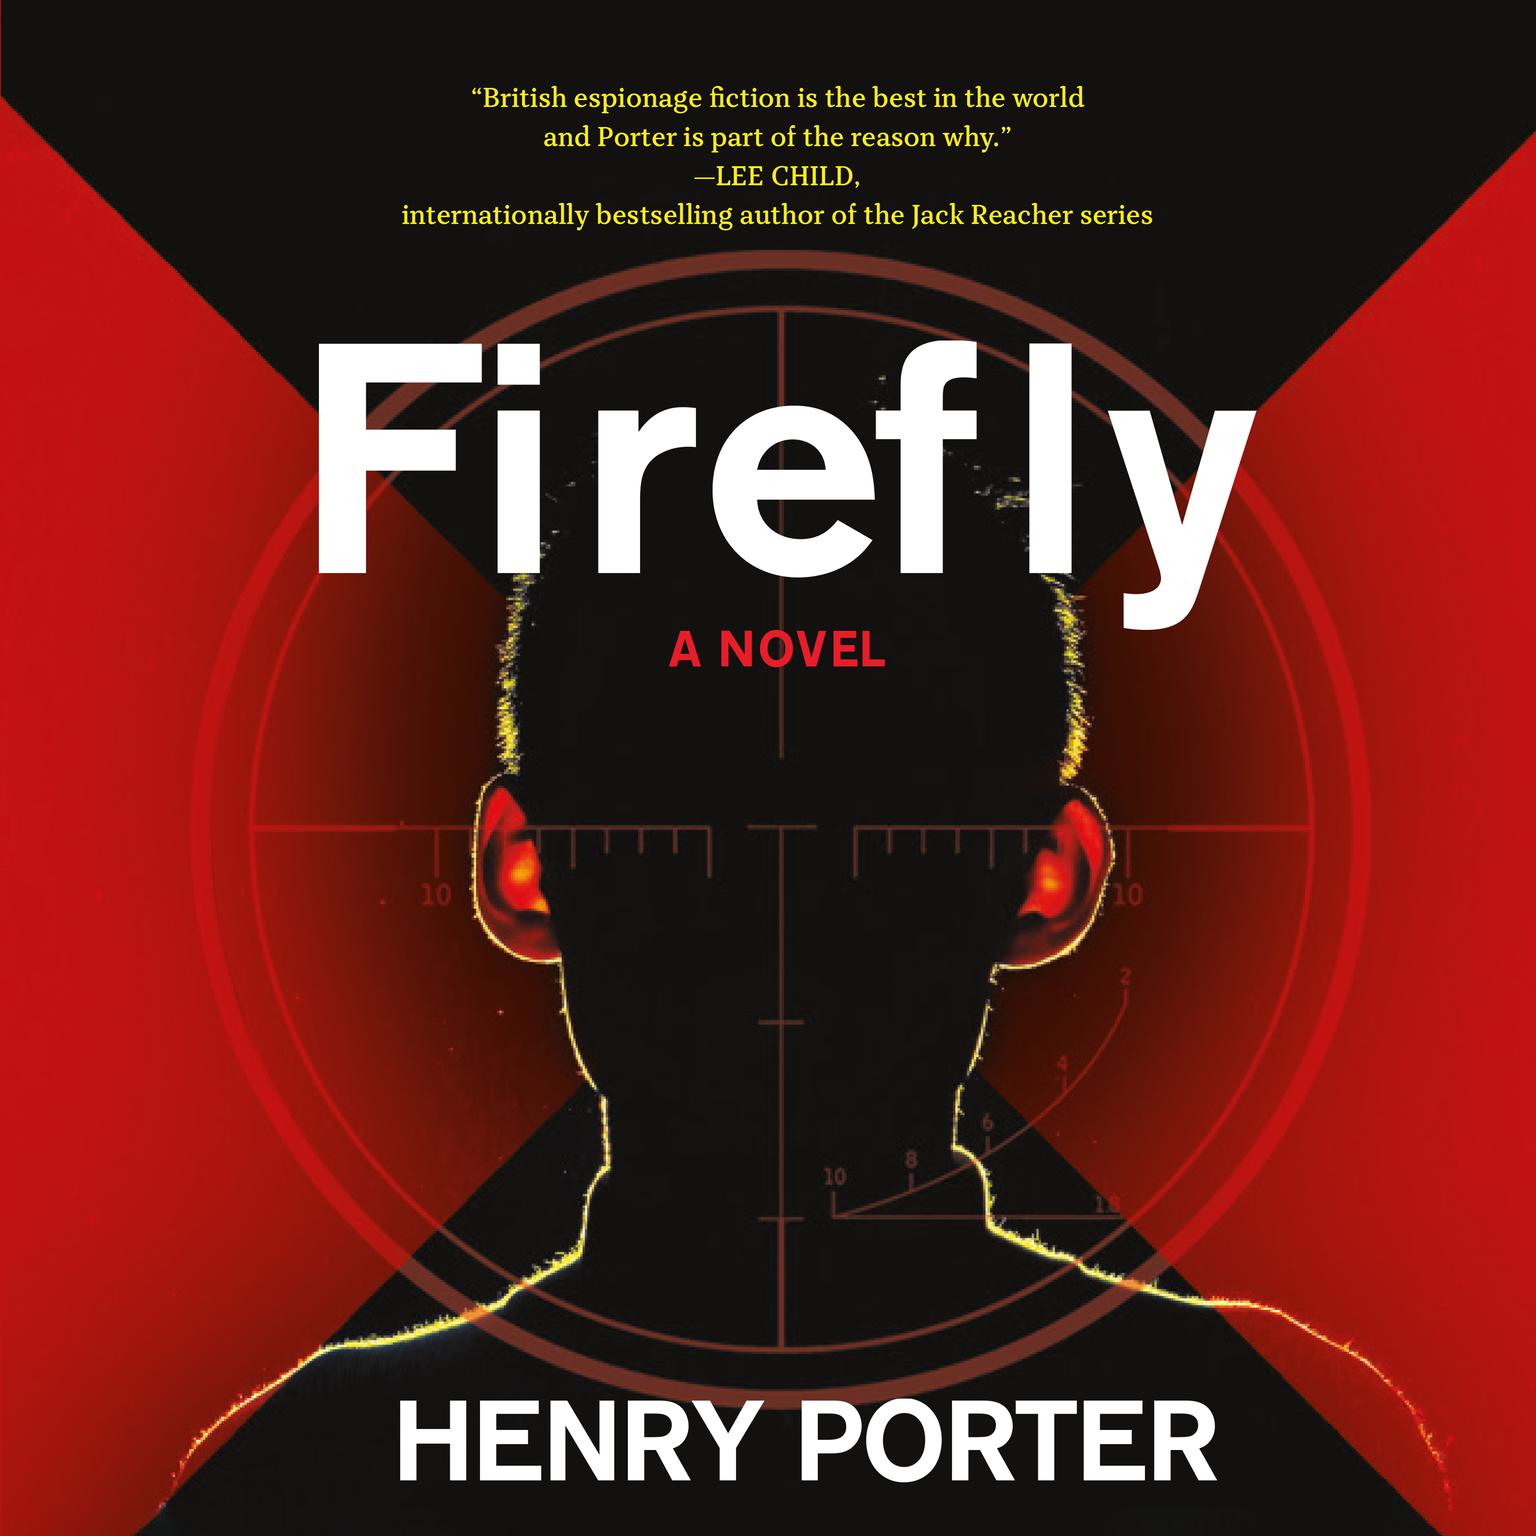 Firefly Audiobook, by Henry Porter